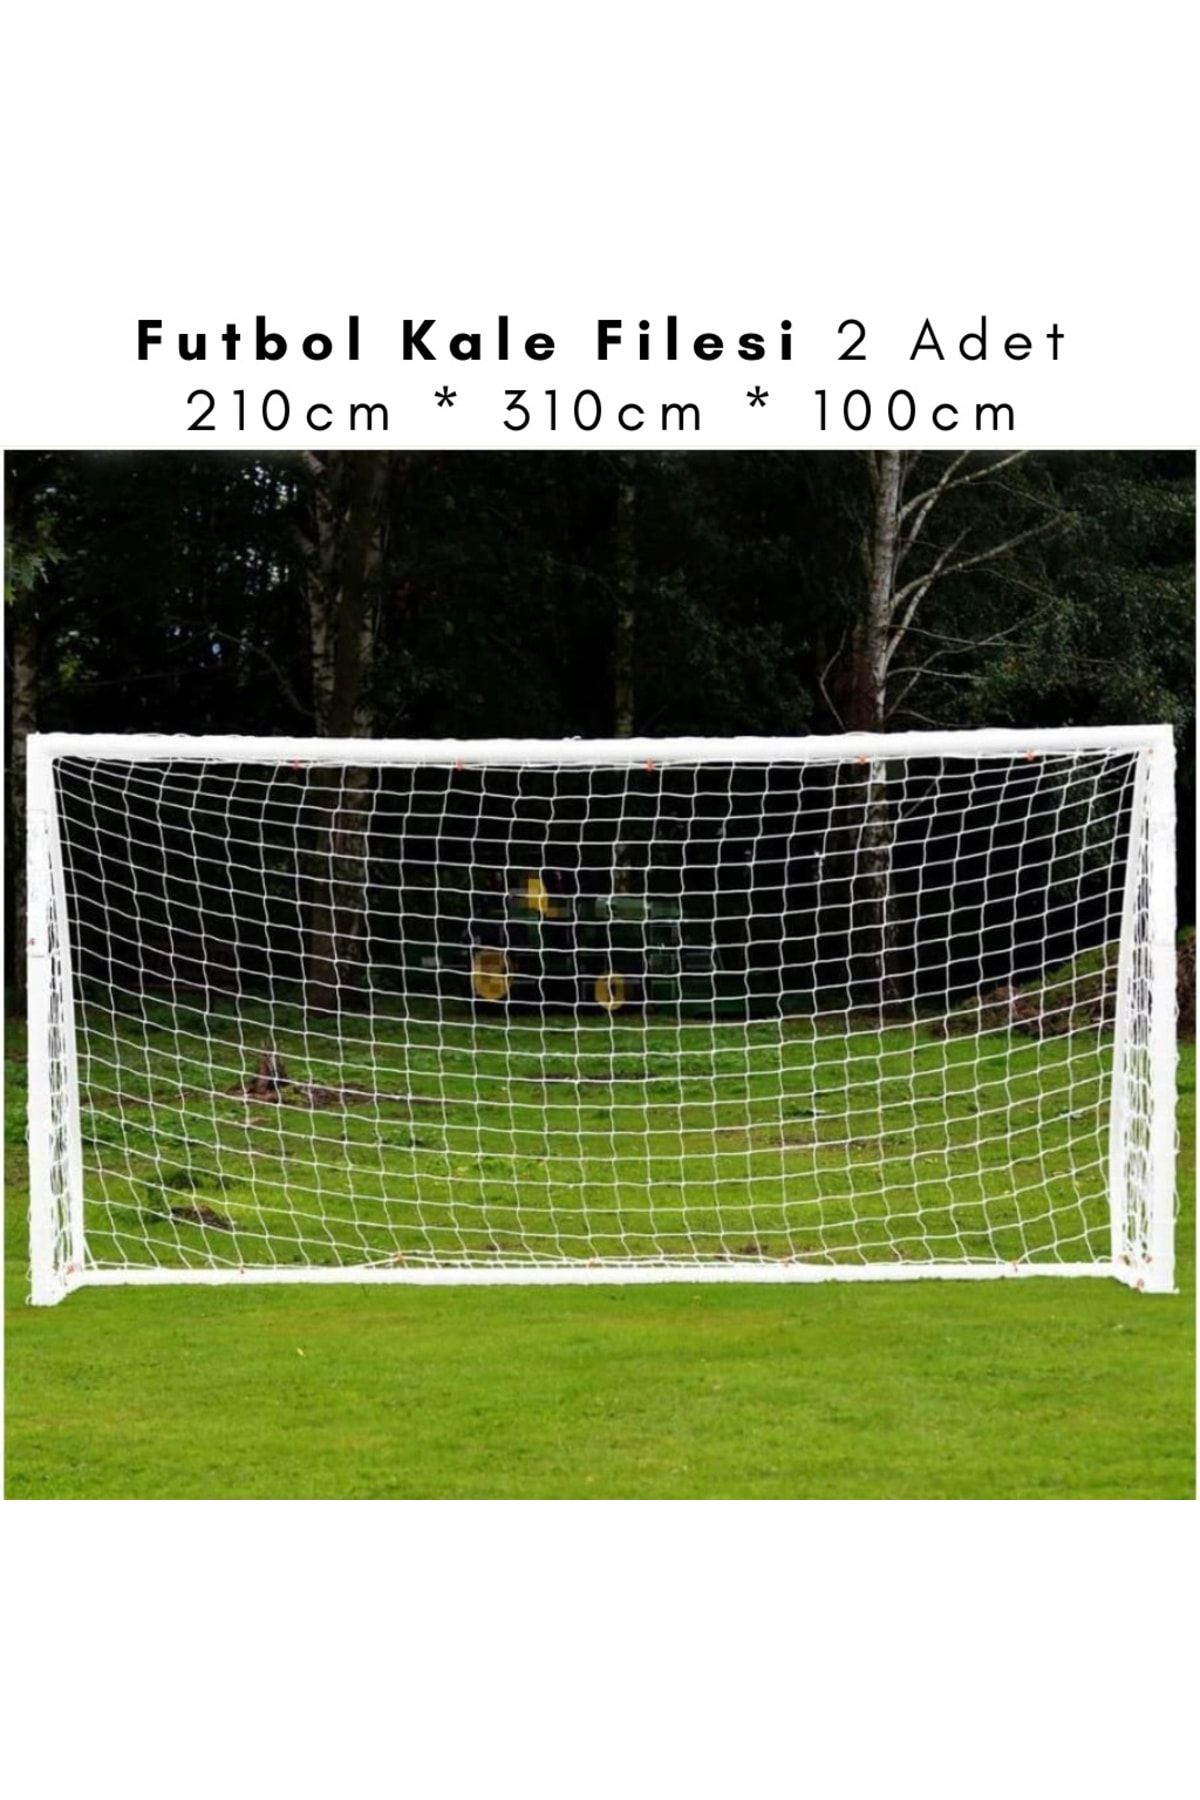 ÖZBEK Futbol Kale Filesi - Halı Saha Futbol Kale Ağı 210 * 310 * 100cm (2 Adet File)